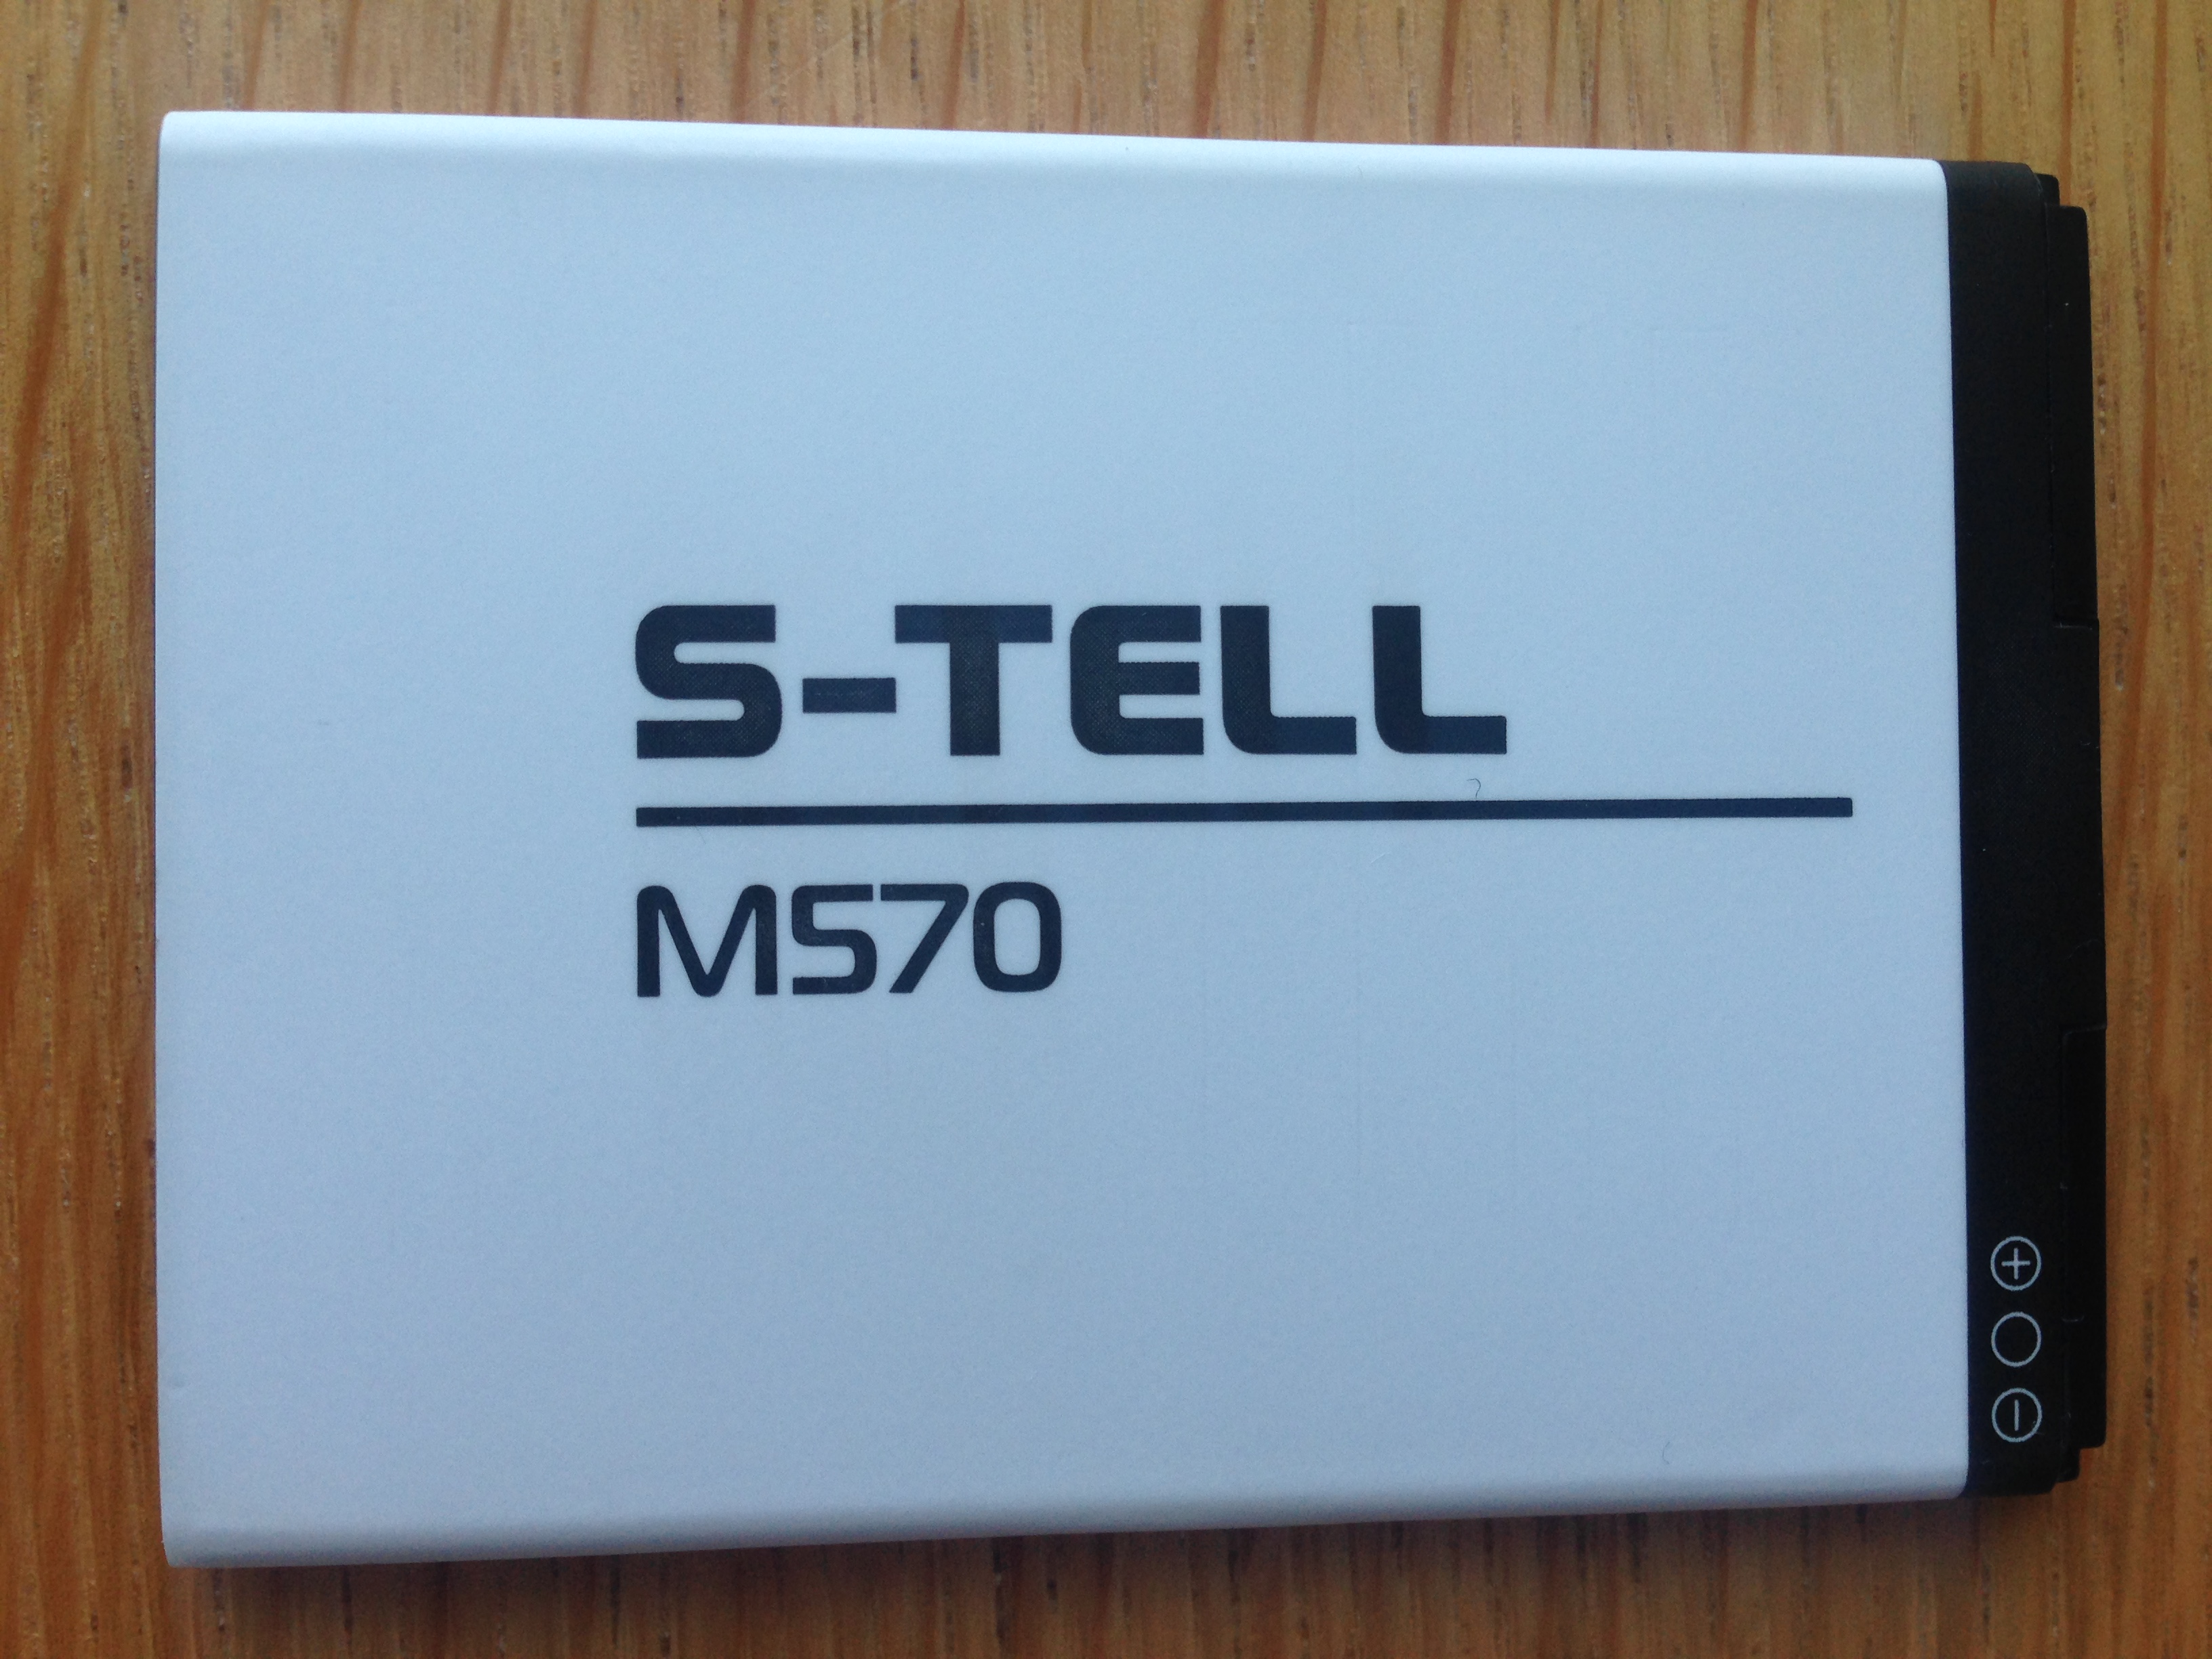 Аккумулятор S-Tell M570